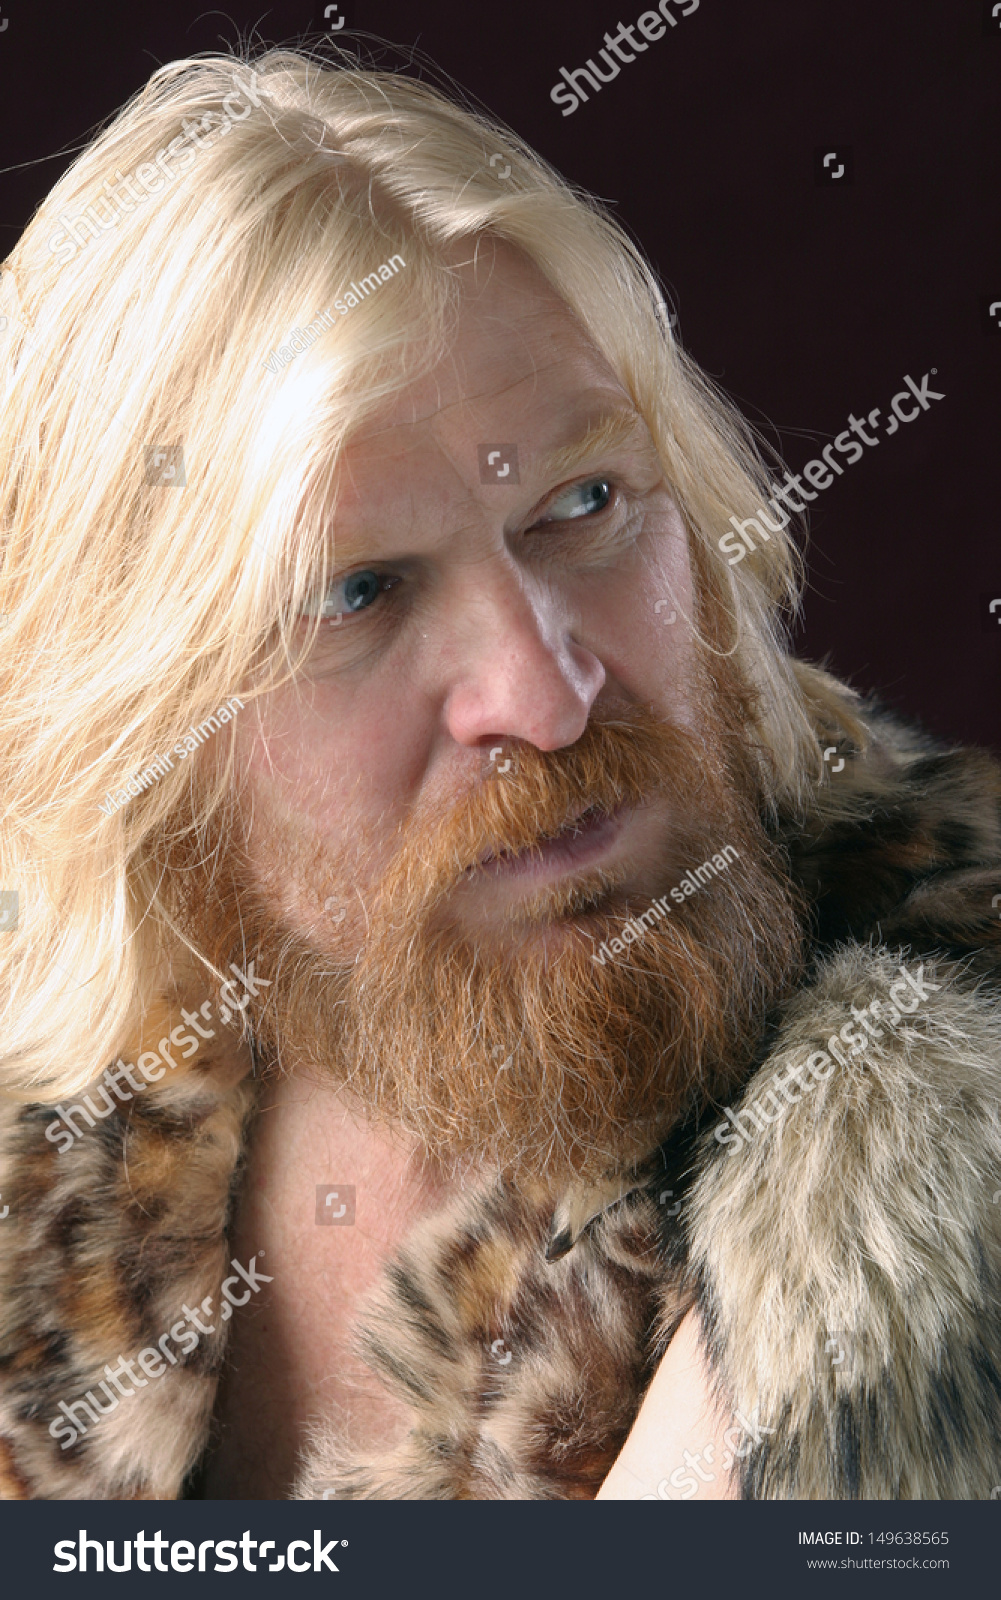 Closeup Portrait Adult Male Long Hair Stock Photo Edit Now 149638565